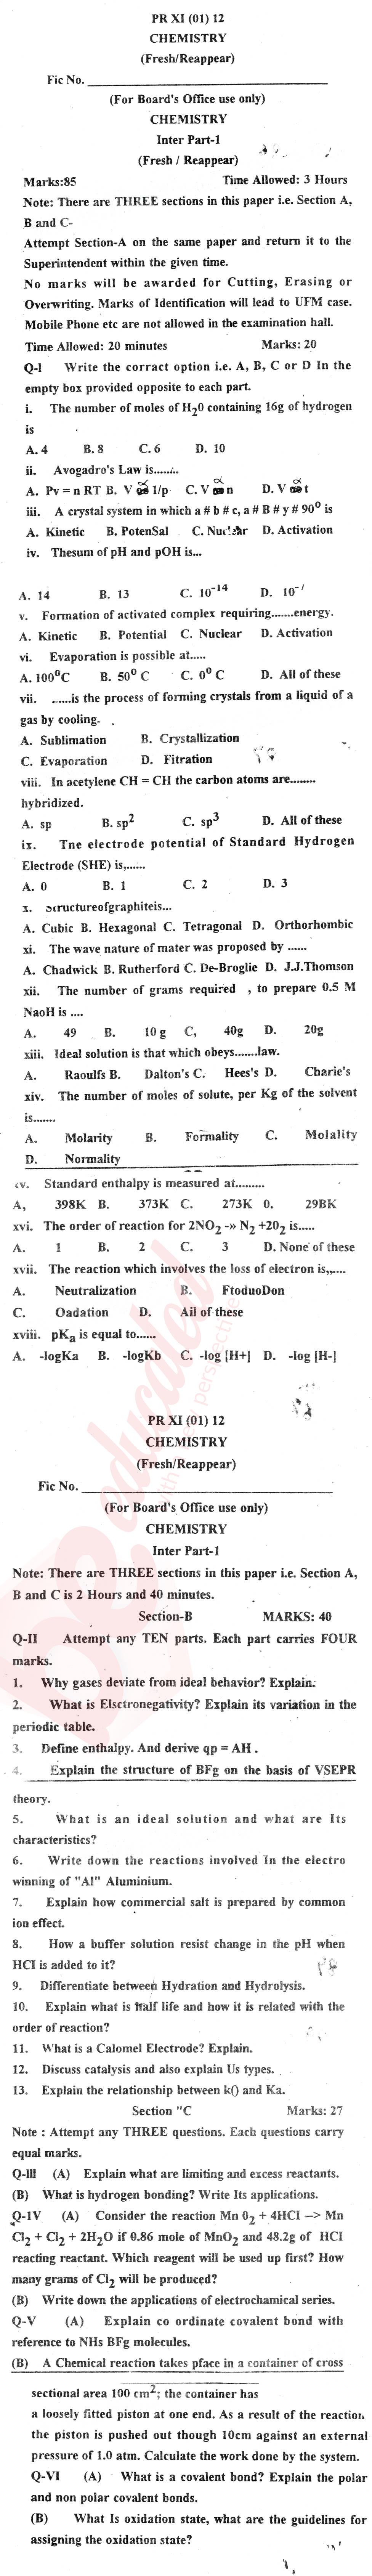 Chemistry FSC Part 1 Past Paper Group 1 BISE DI Khan 2012